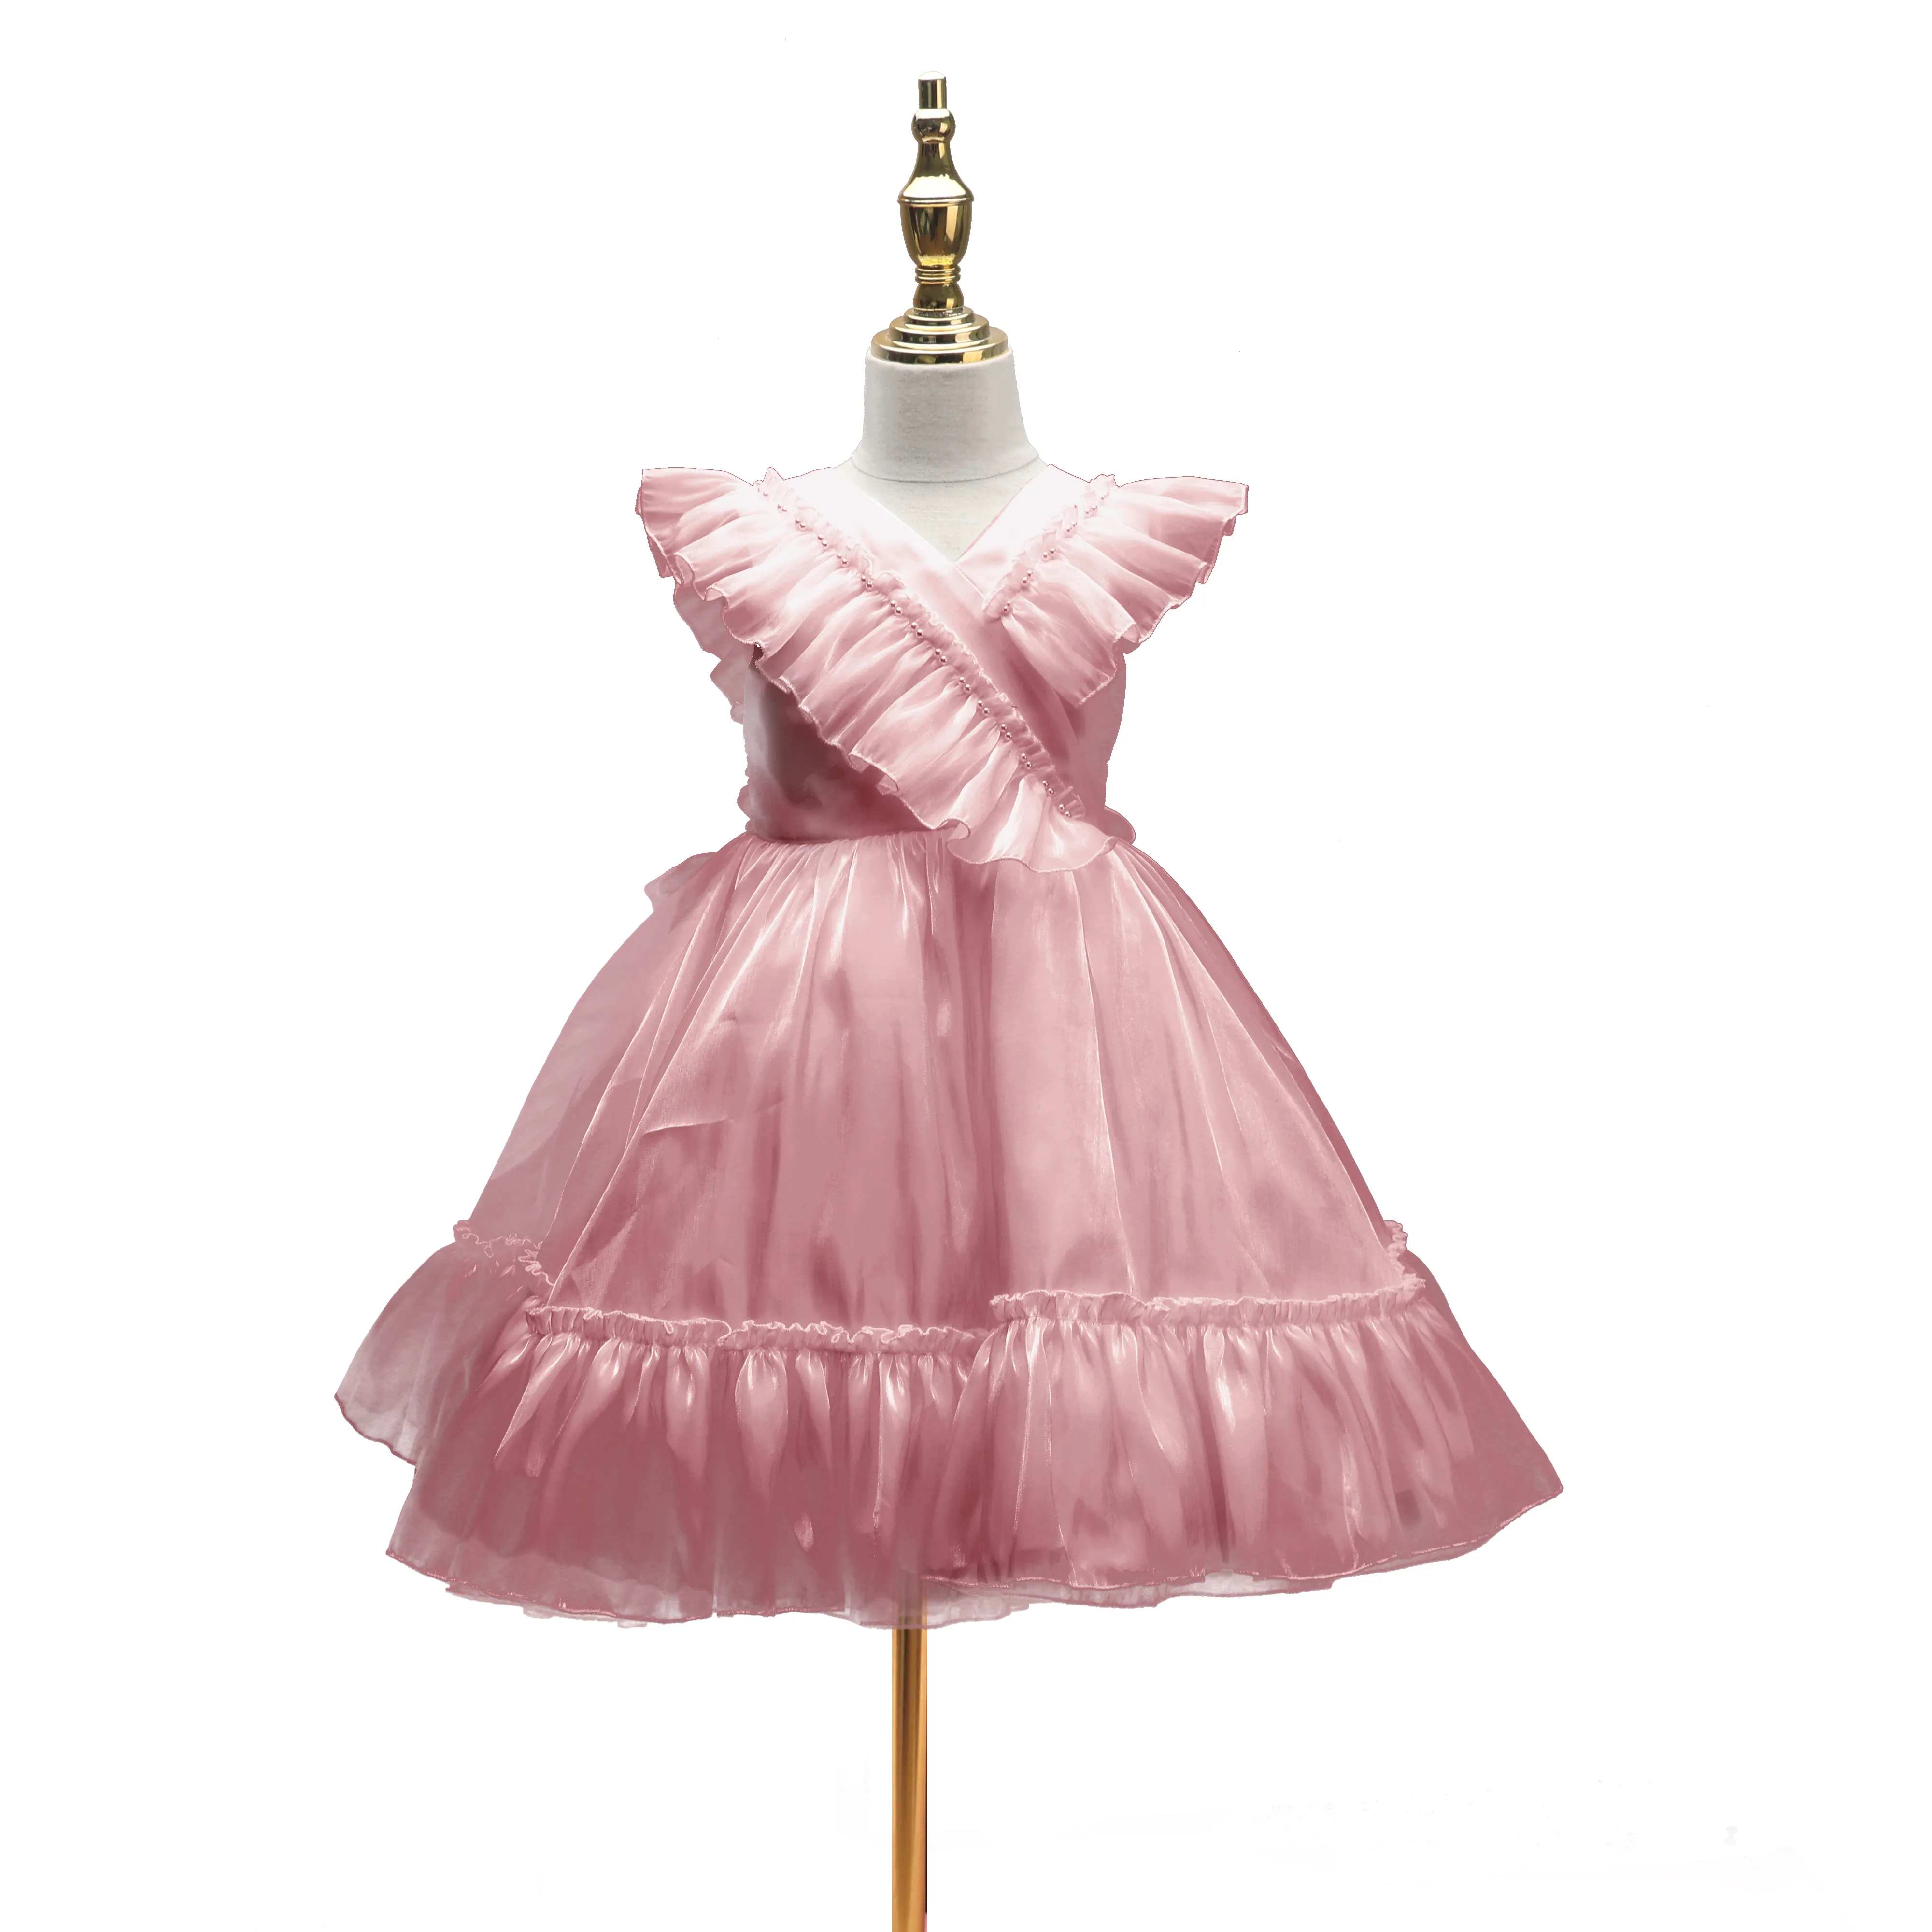 ग्रीष्मकालीन नई लड़की विदेशी शैली की पोशाक बेबी गर्ल सुरुचिपूर्ण पोशाक छोटी आस्तीन वाली प्यारी राजकुमारी पोशाक